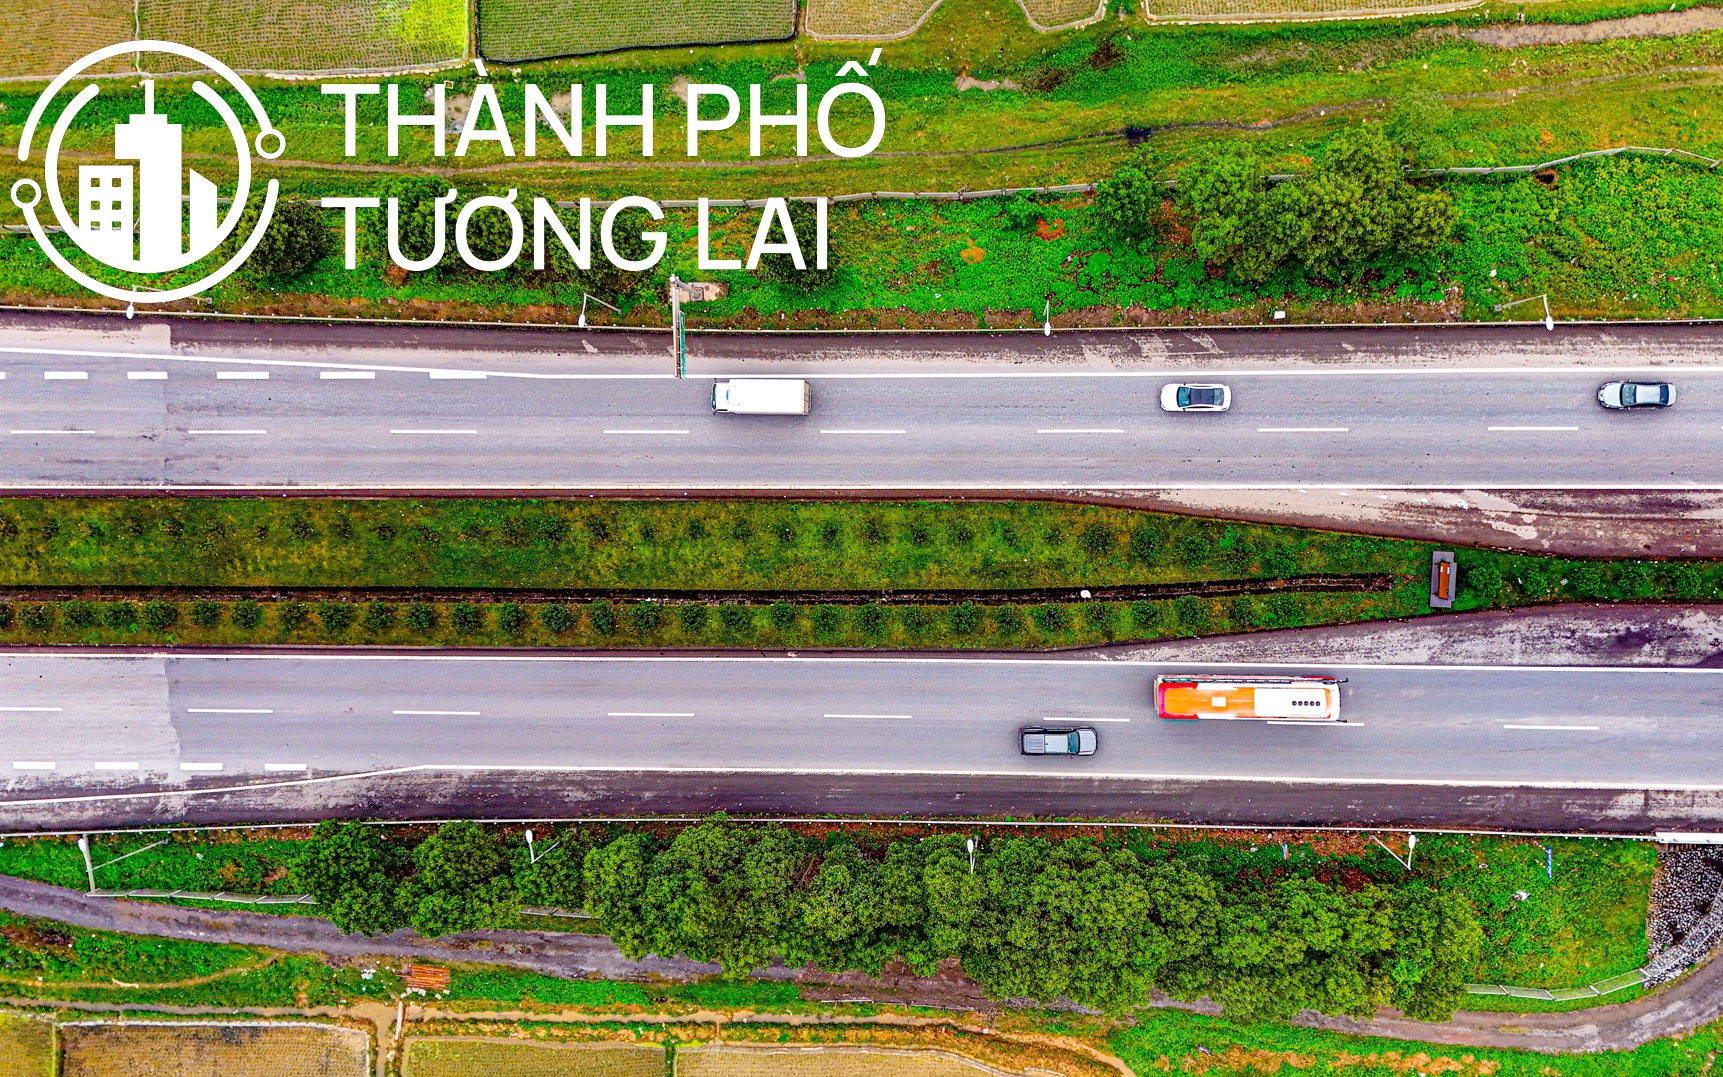 Cao tốc từng dài nhất Việt Nam, tổng mức đầu tư 10.000 tỷ nhưng không thu phí